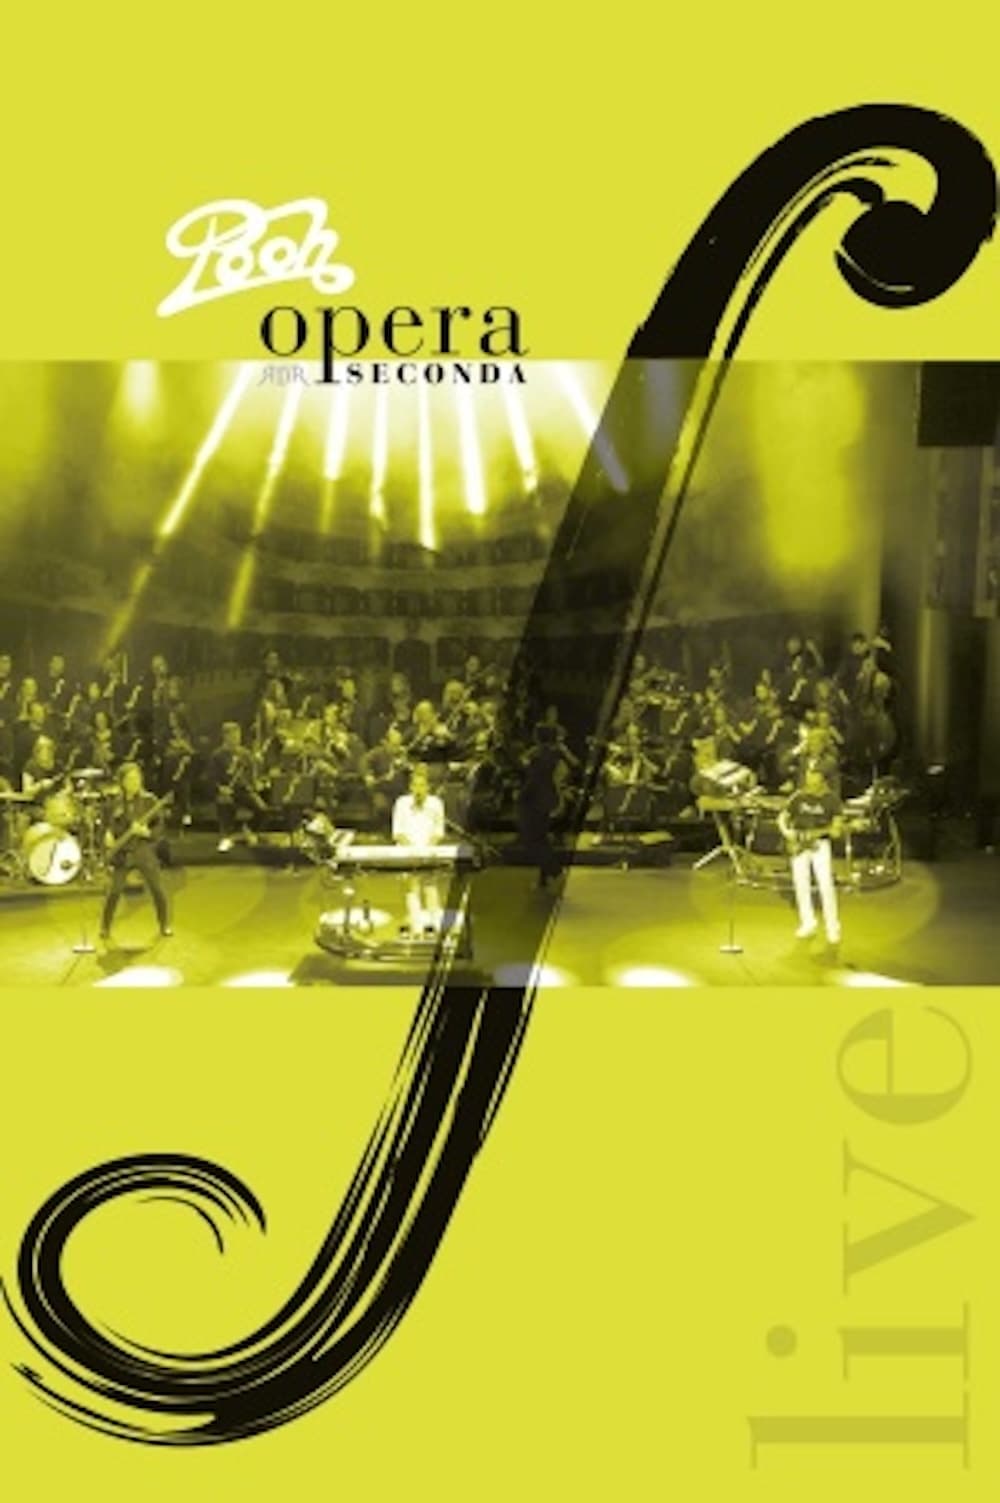 Pooh - Opera Seconda Live